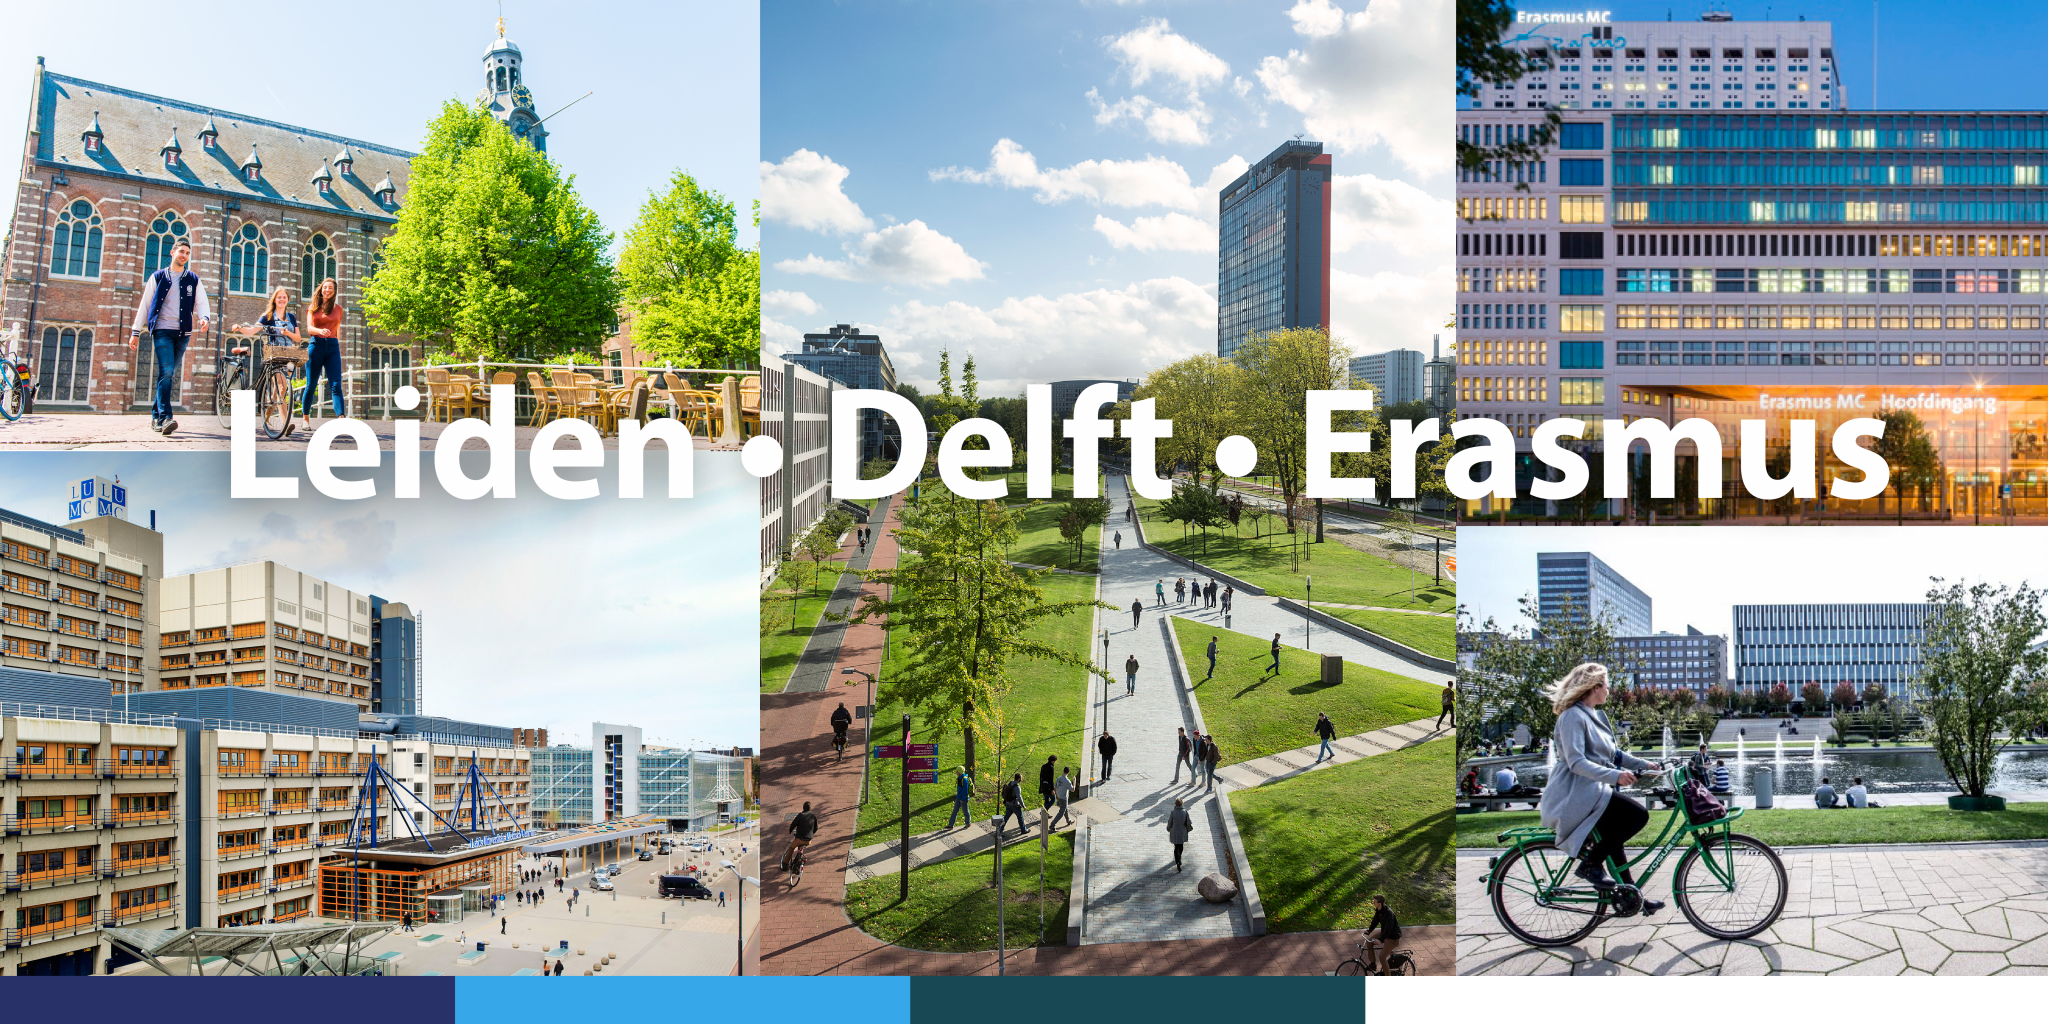 Leiden-Delft-Erasmus